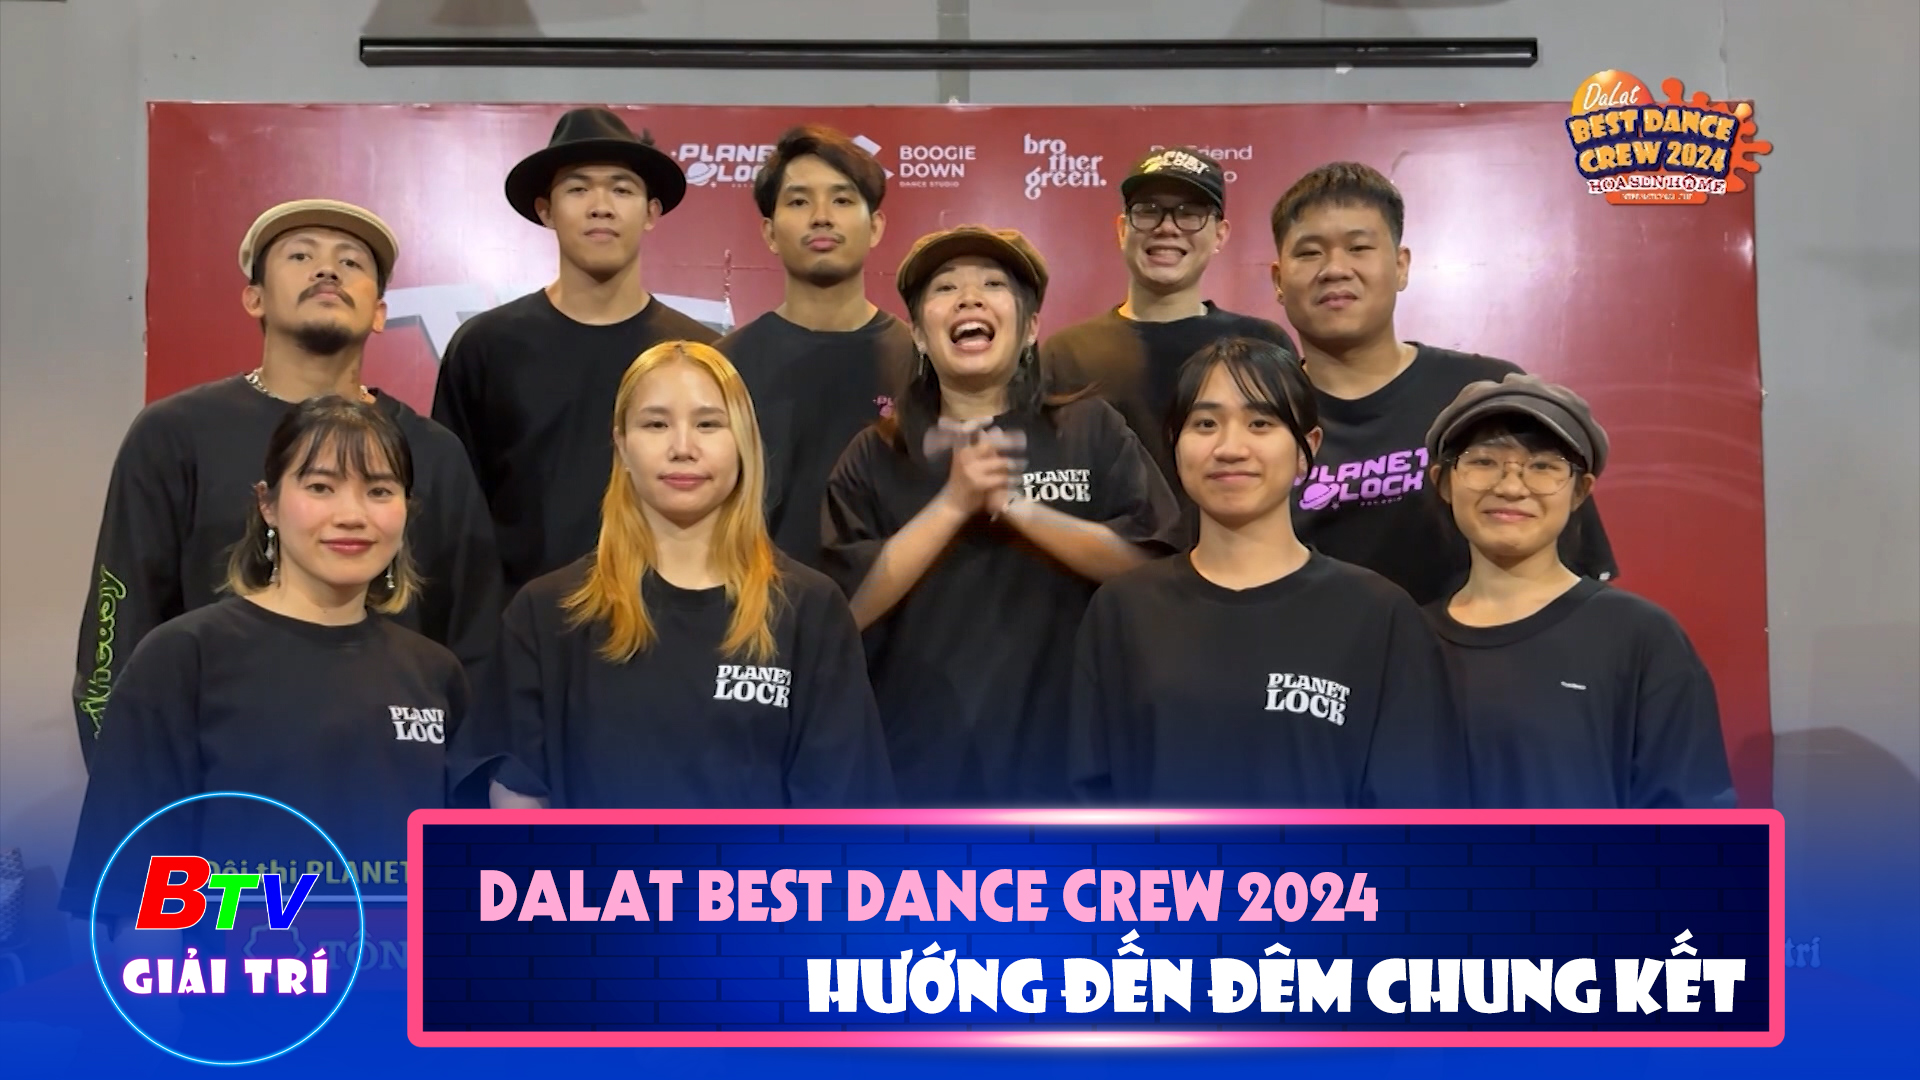 Dalat Best Dance Crew 2024 - Hoa Sen Home International Cup - Nỗ lực tập luyện hướng đến đêm chung kết